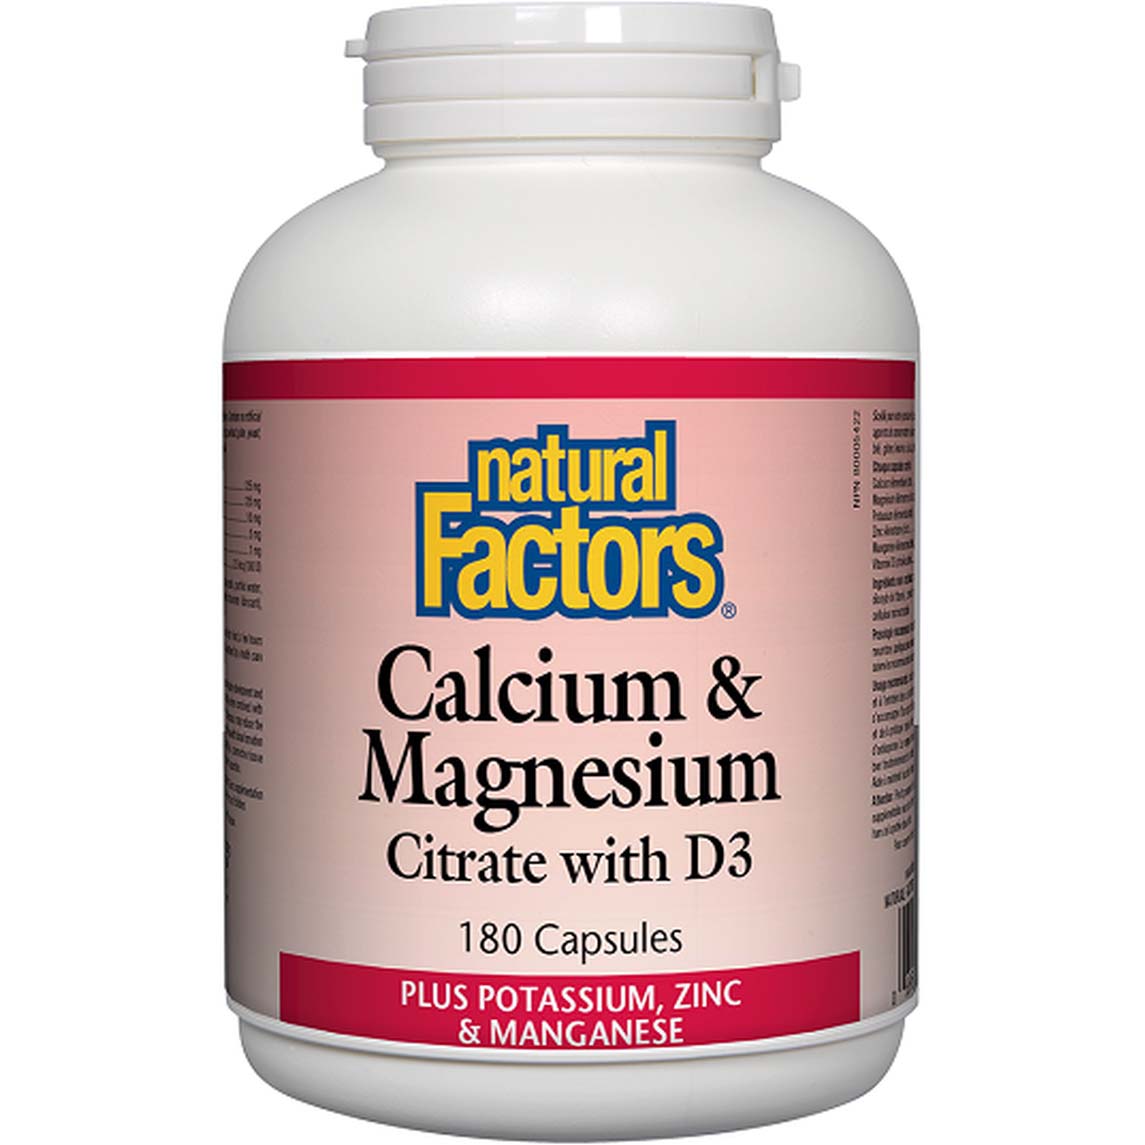 Natural Factors Calcium & Magnesium Citrate with D3 Plus Potassium, Zinc & Manganese, 180 Capsules